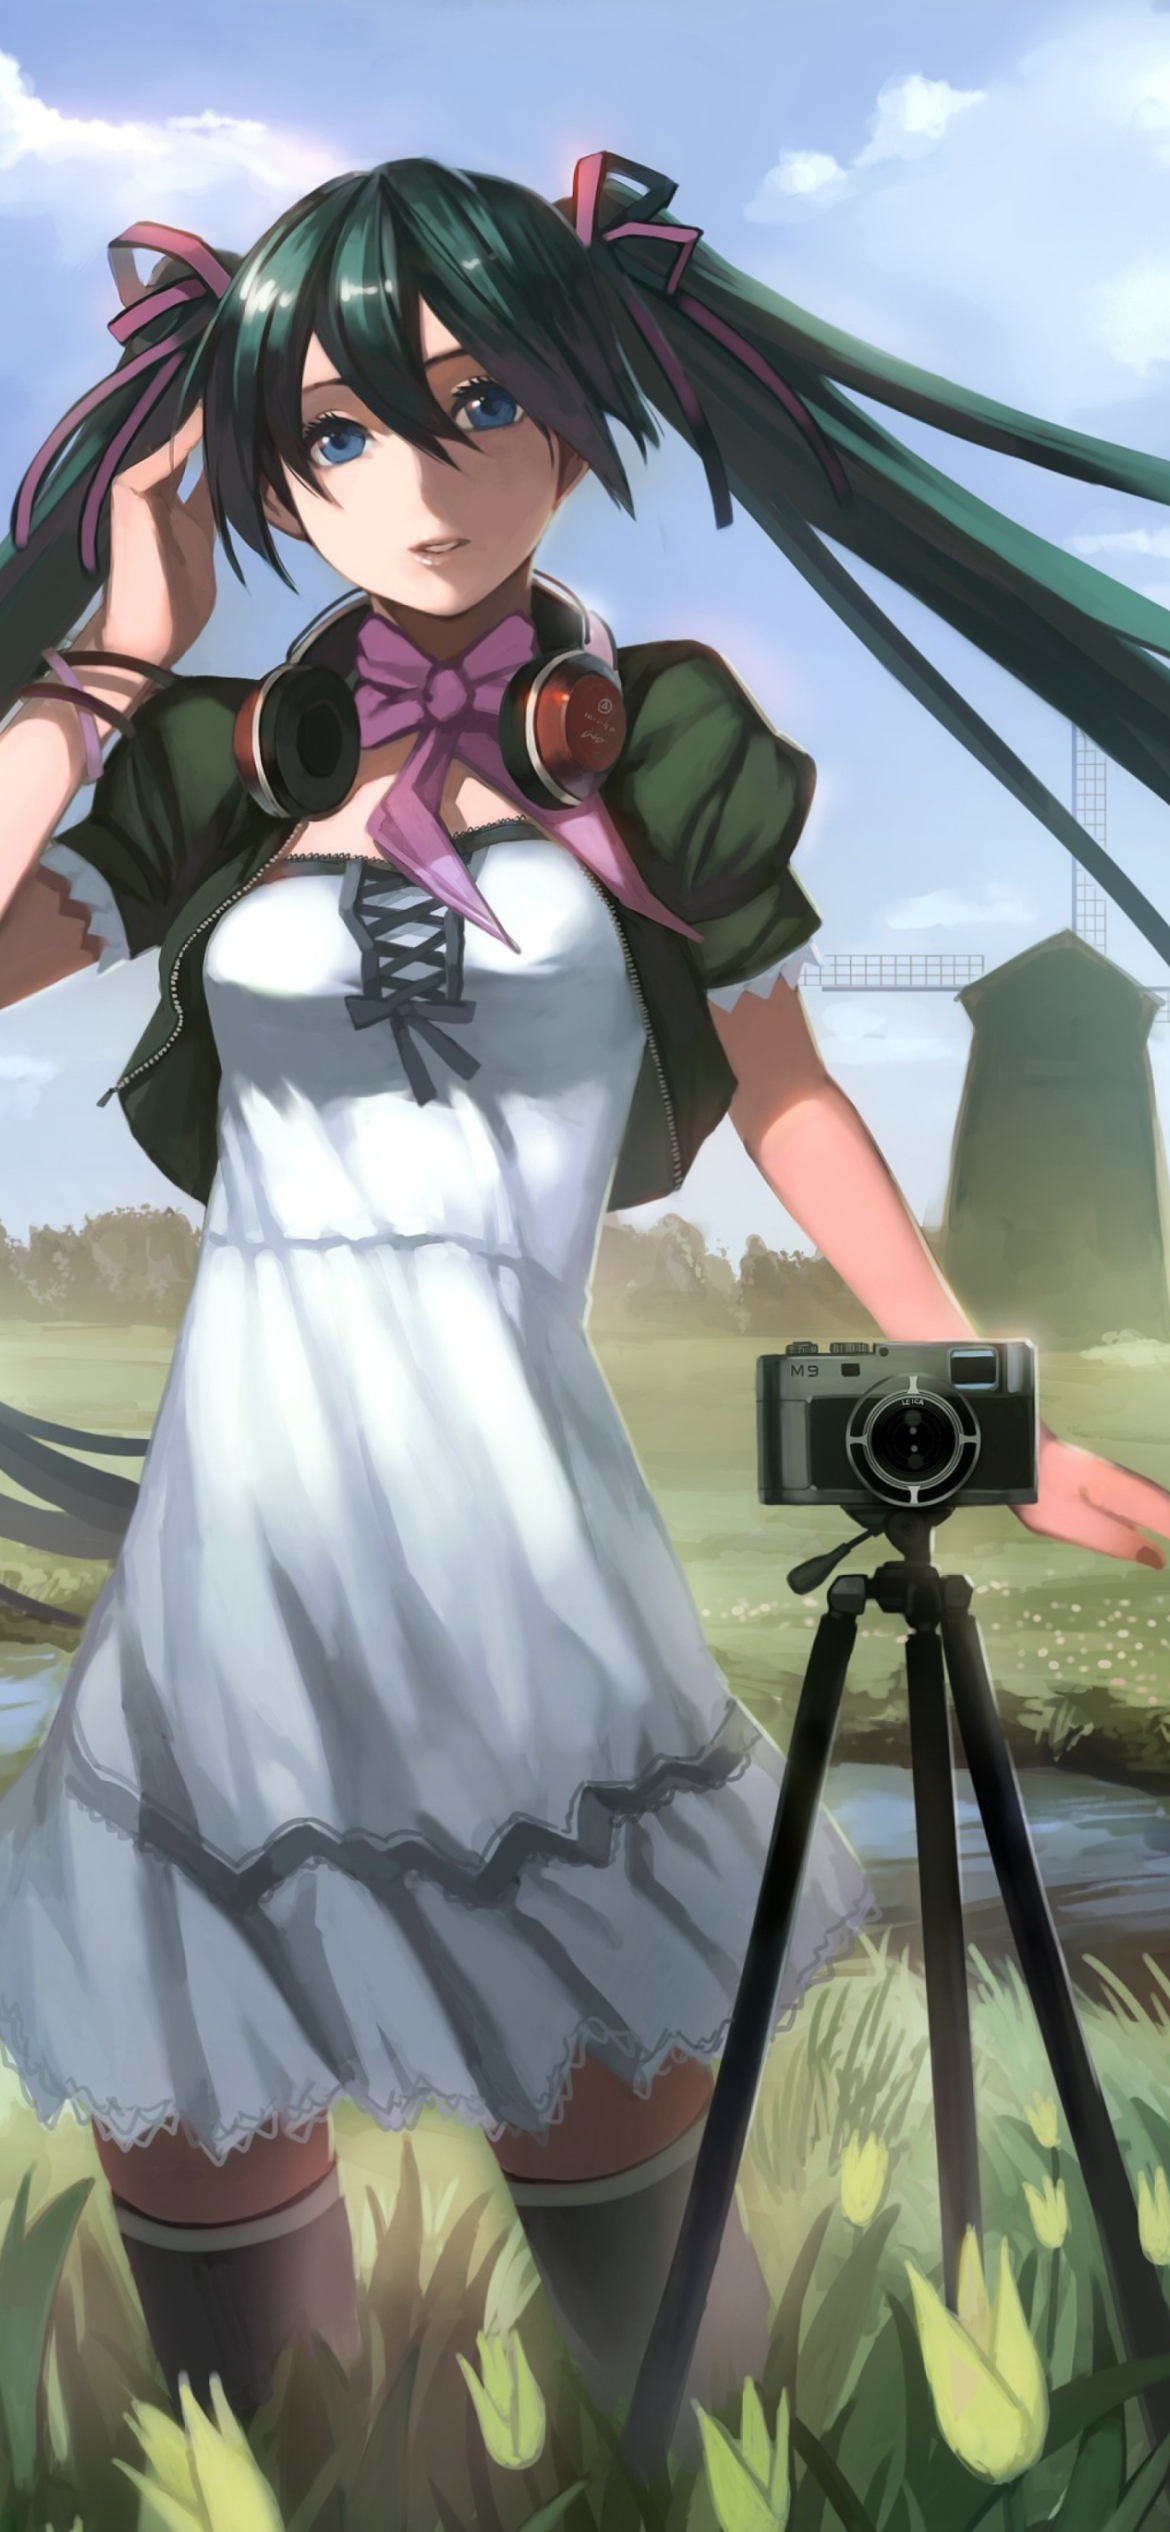 Vocaloid - Girl Photographer Anime screenshot #1 1170x2532